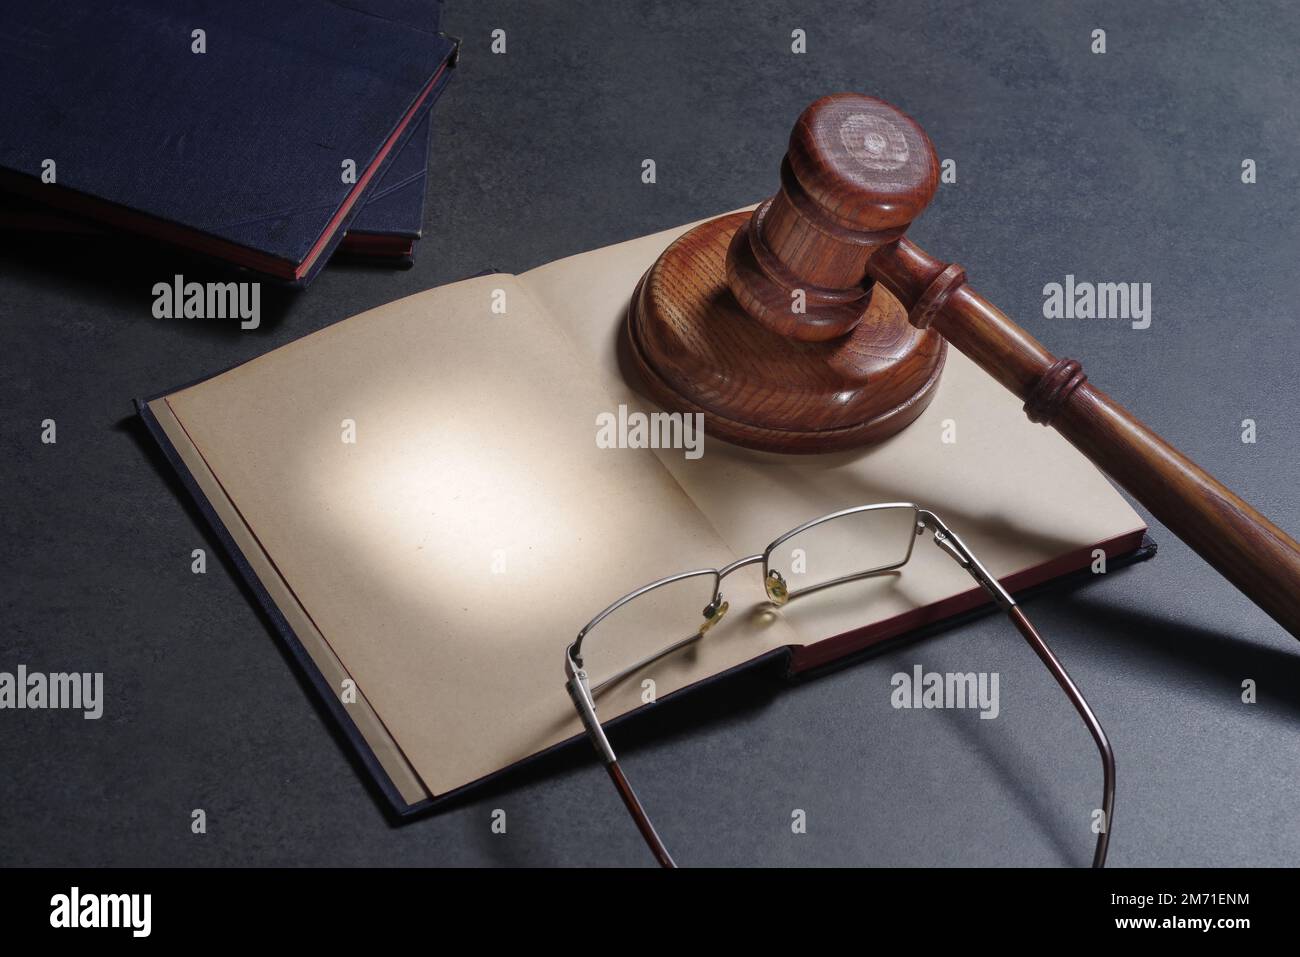 Concept juridique du droit et de la justice. Livre de droit ouvert de cahier avec gavel en bois des juges sur la salle d'audience Banque D'Images